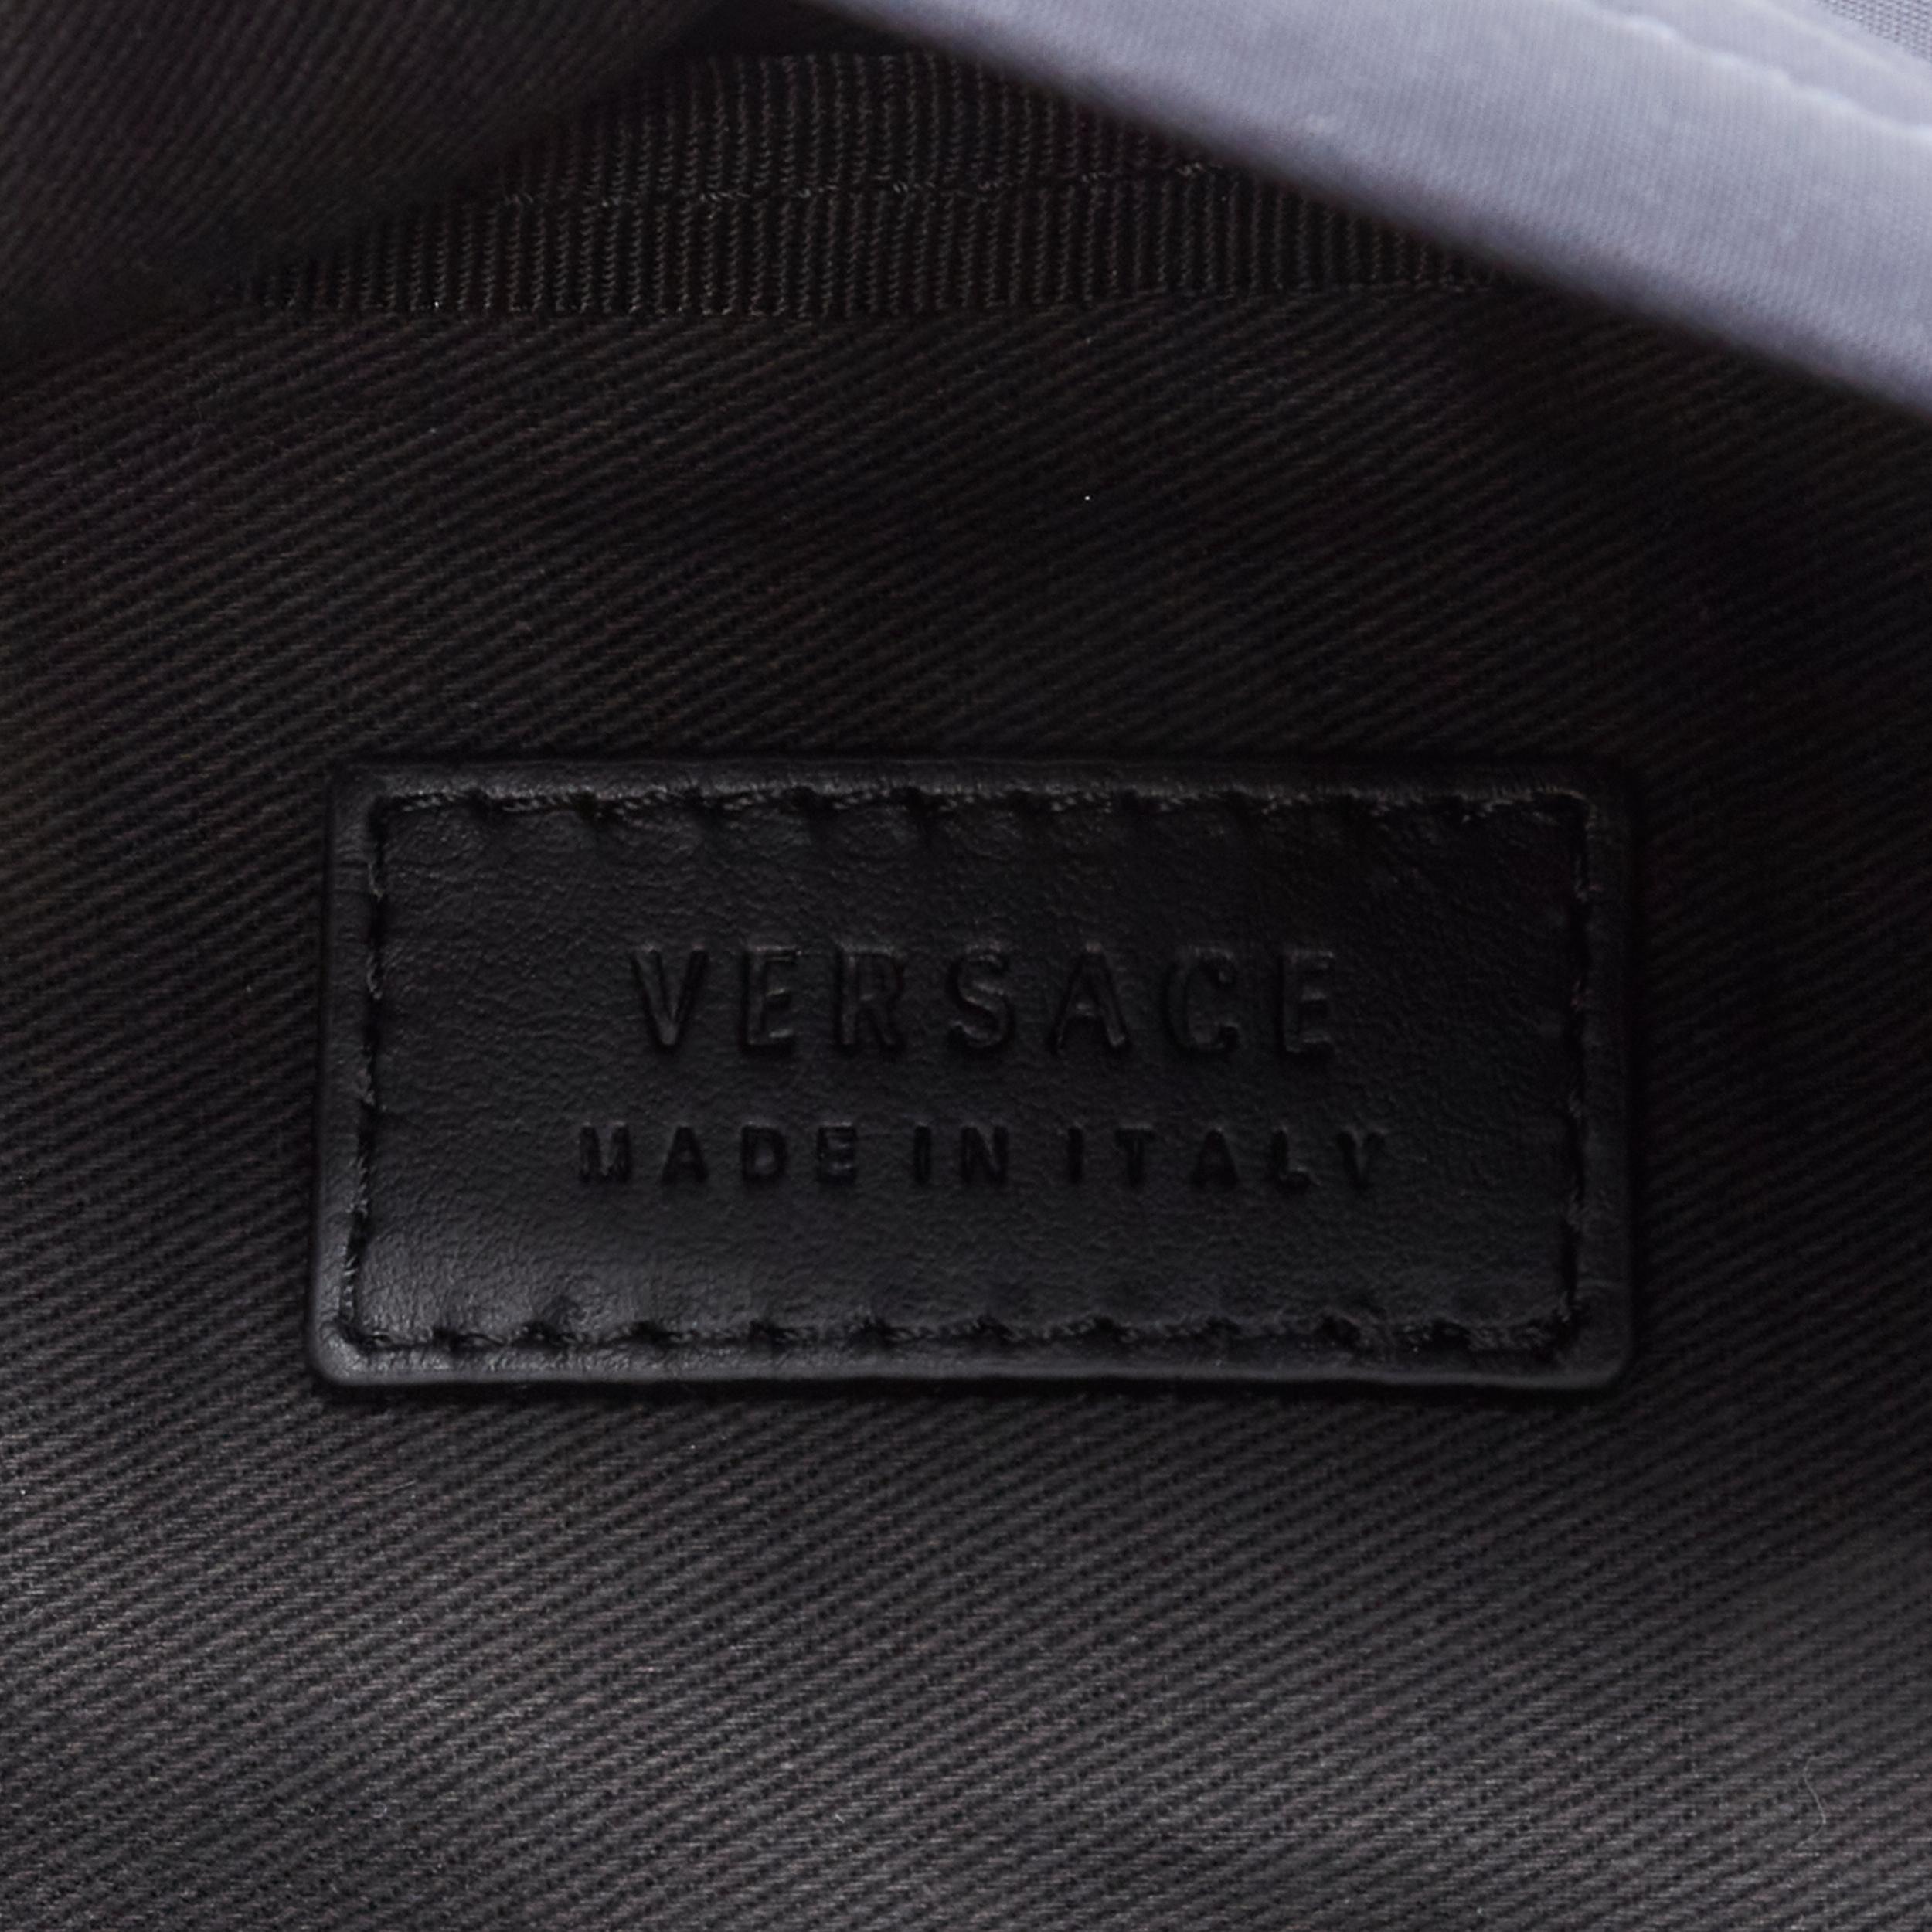 Men's new VERSACE Palazzo Medusa navy nylon Greca stitch pocket crossbody belt bag